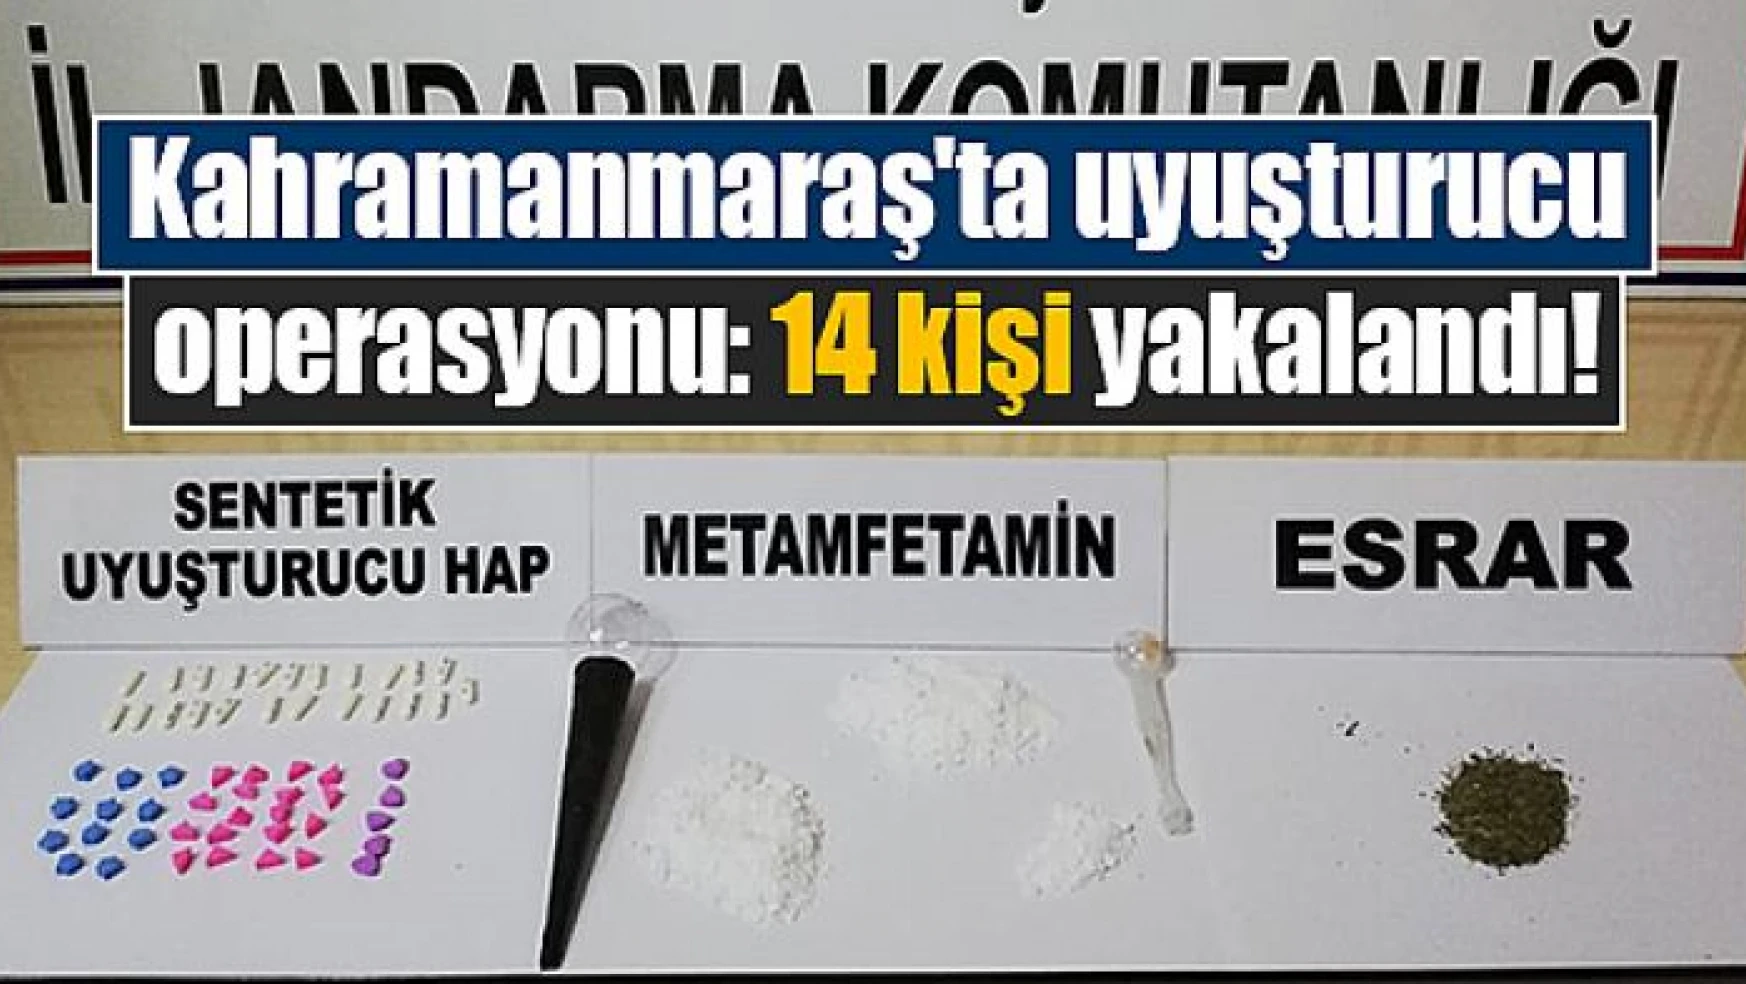 Kahramanmaraş'ta uyuşturucu operasyonu: 14 kişi yakalandı!